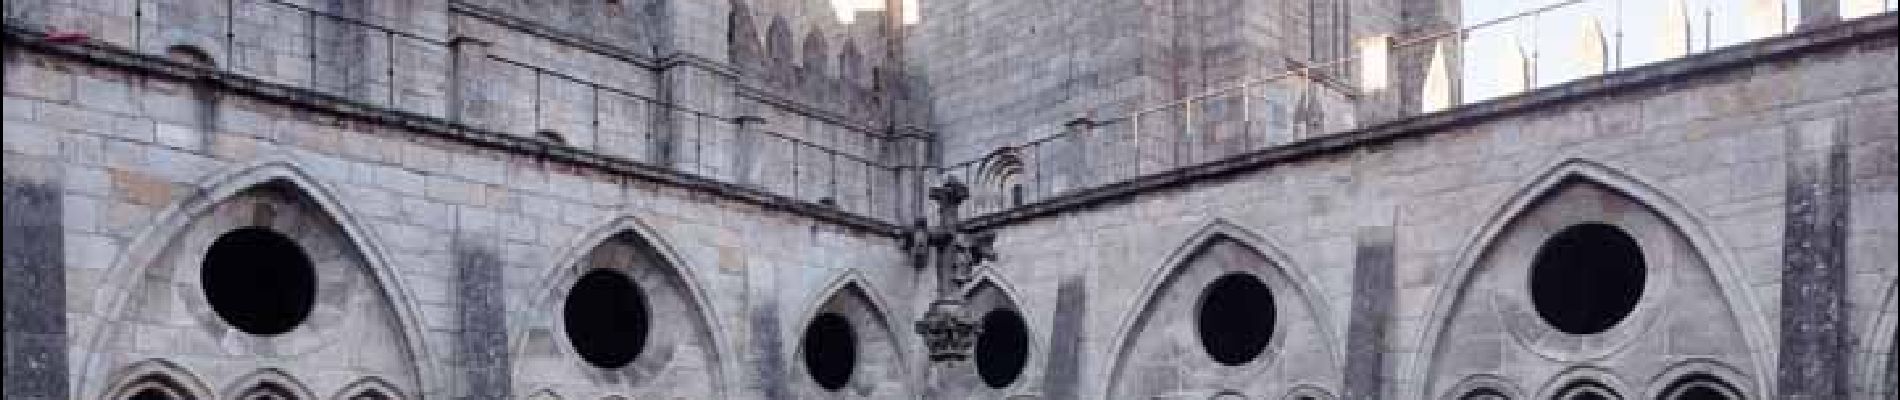 Punto de interés Cedofeita, Santo Ildefonso, Sé, Miragaia, São Nicolau e Vitória - Sé do Porto (cathedrale) - Photo